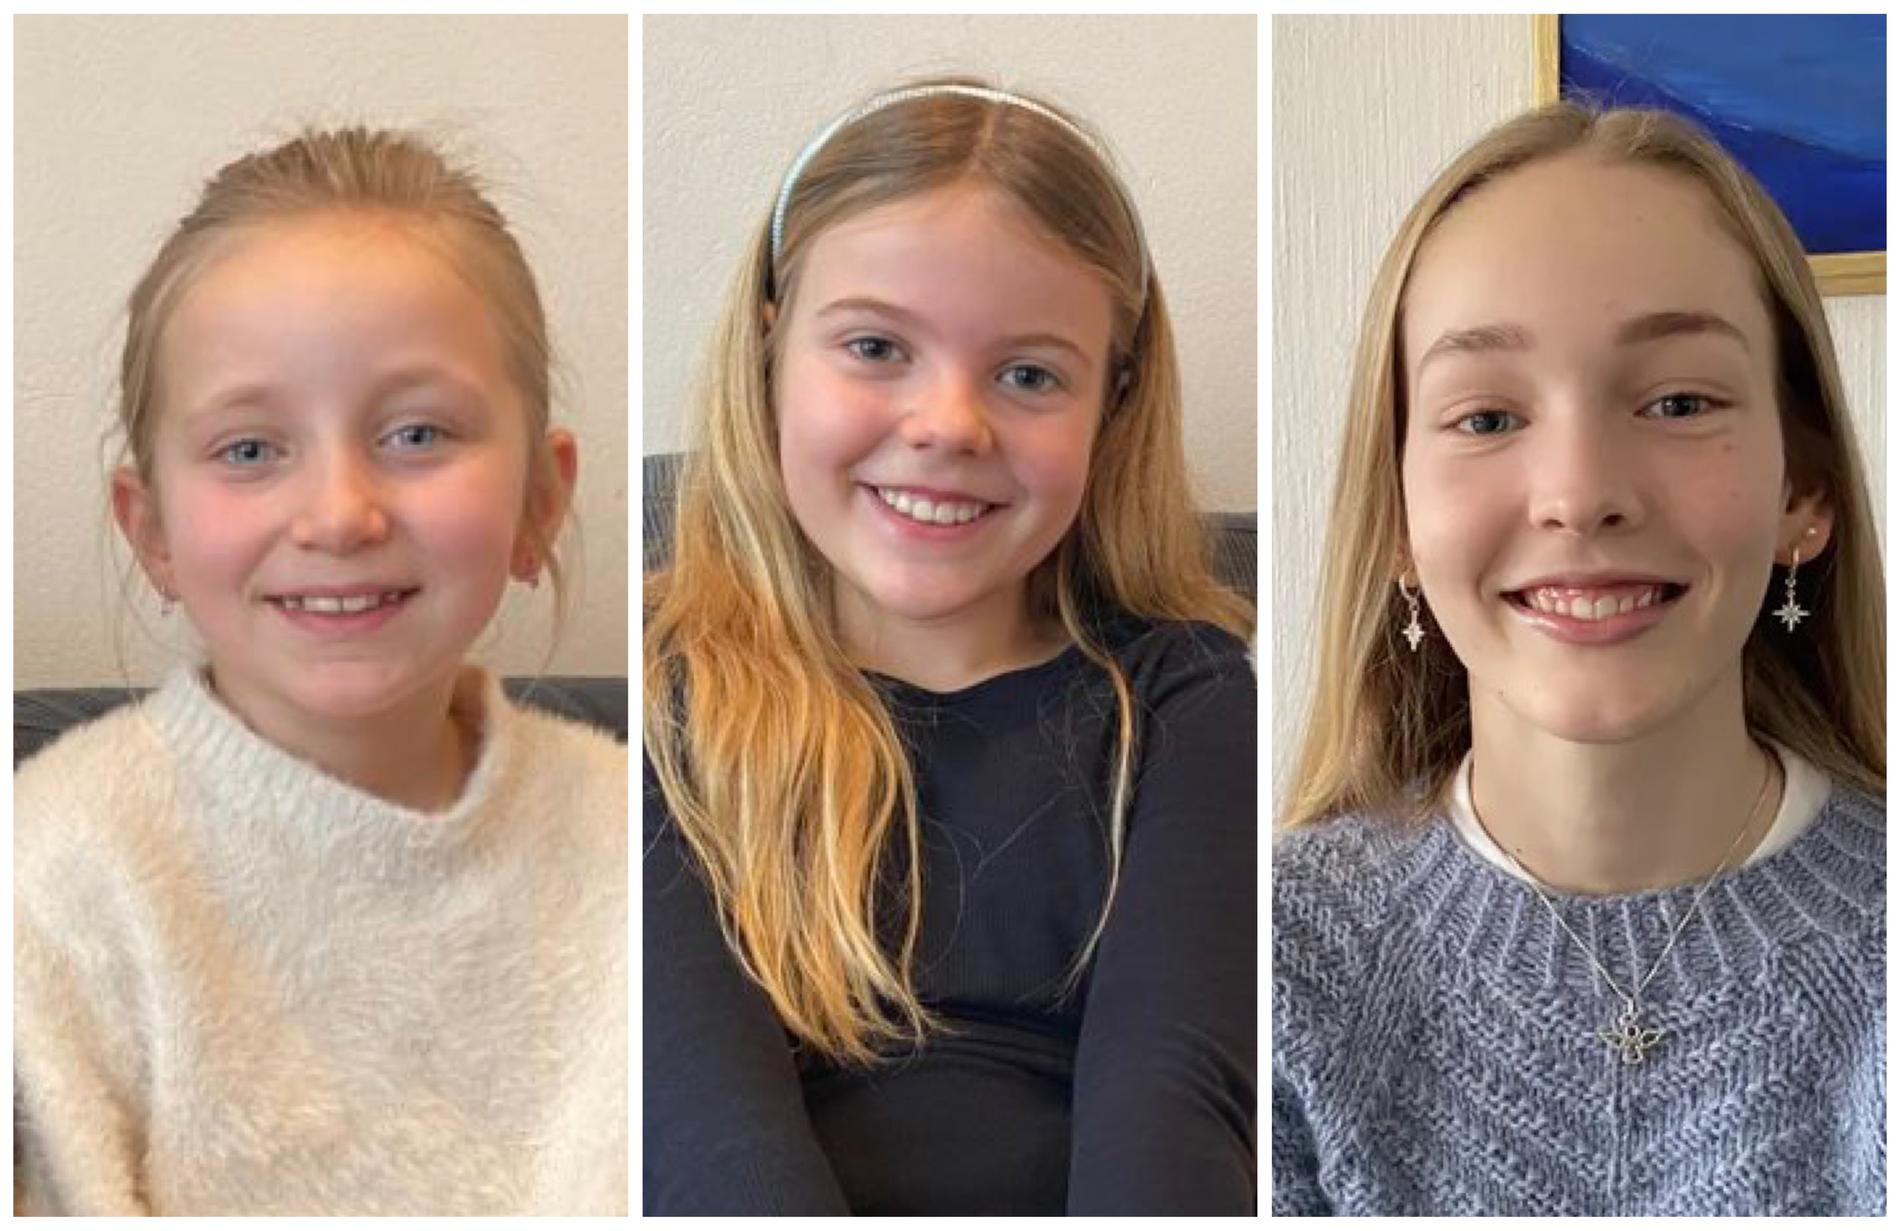 Sikke Håland, Sara Sandal Østerhus og Guro Kalvatn Eikeland har alle tre fått skuespiller drømmen sin oppfylt. Nå skal de spille sentrale roller i Annie Jr. oppsetningen. ||